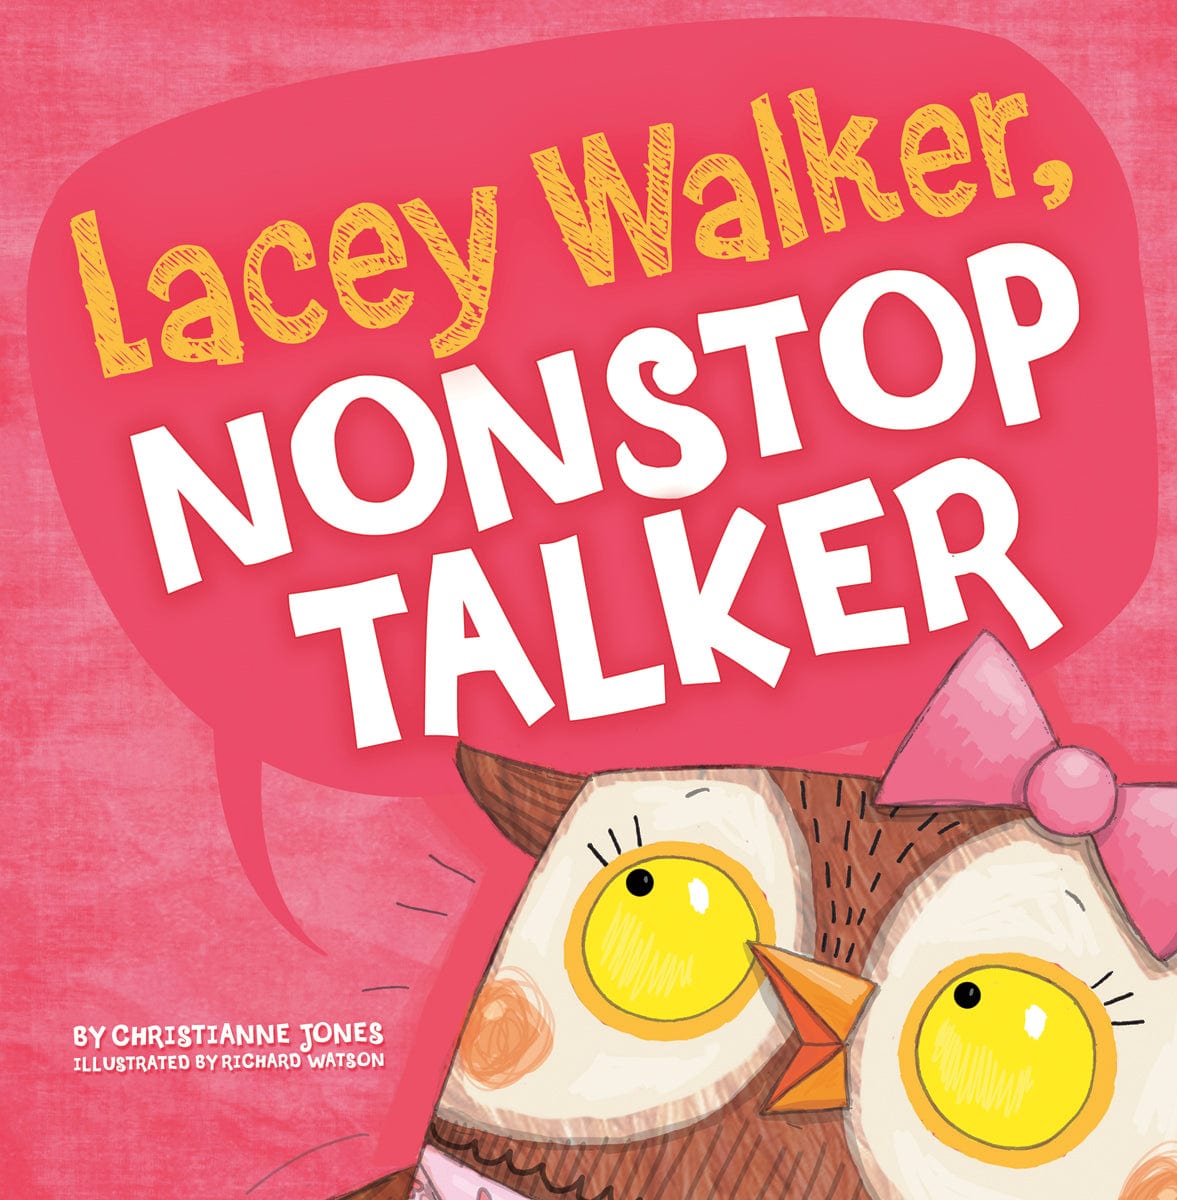 Lacey Walker, Nonstop Talker - Saltire Games